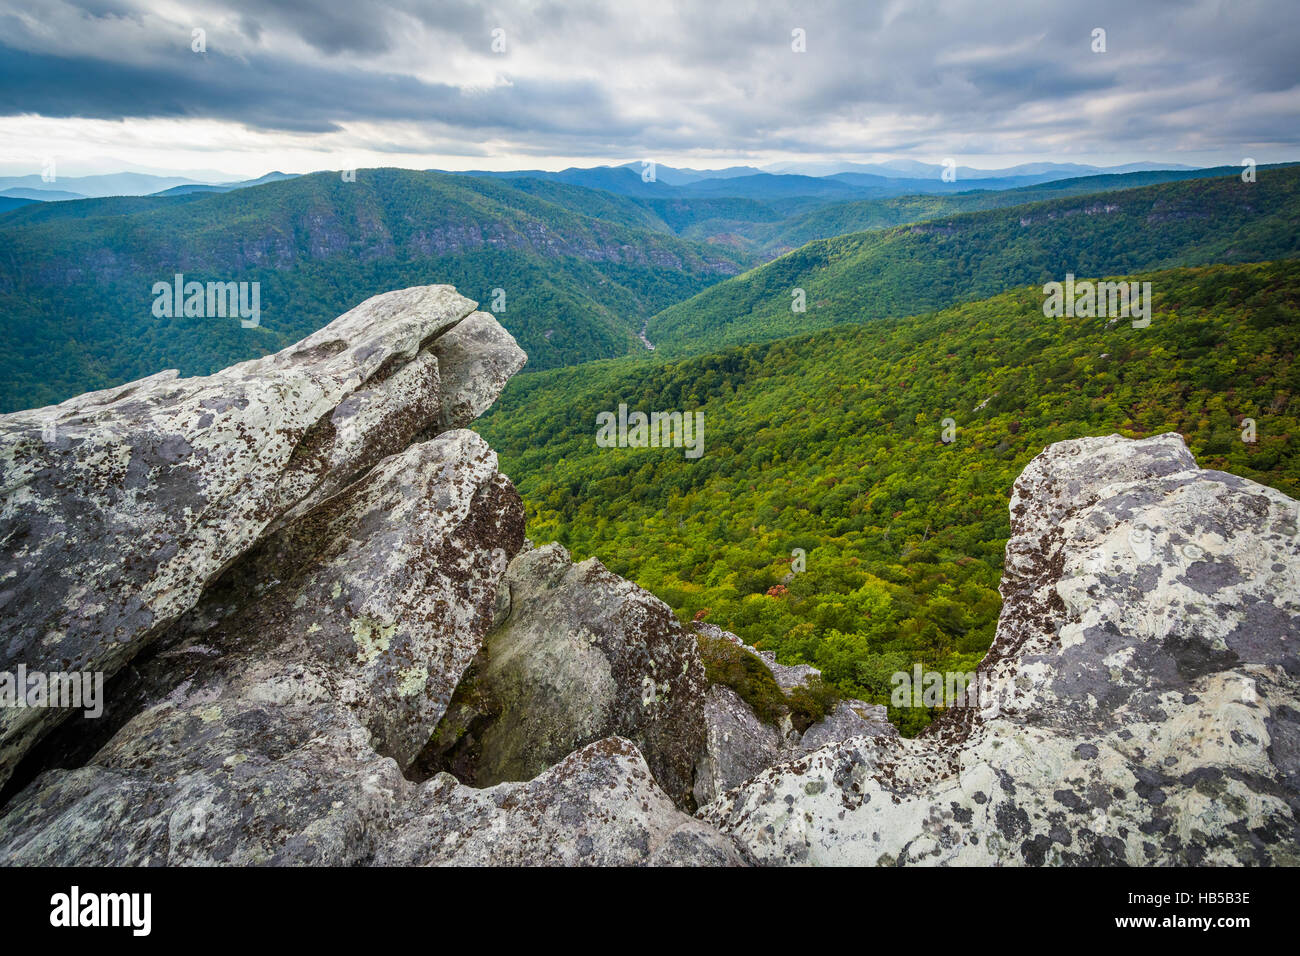 Vista de la montaña de Linville Gorge de carey, en el Bosque Nacional de Pisgah, Carolina del Norte. Foto de stock